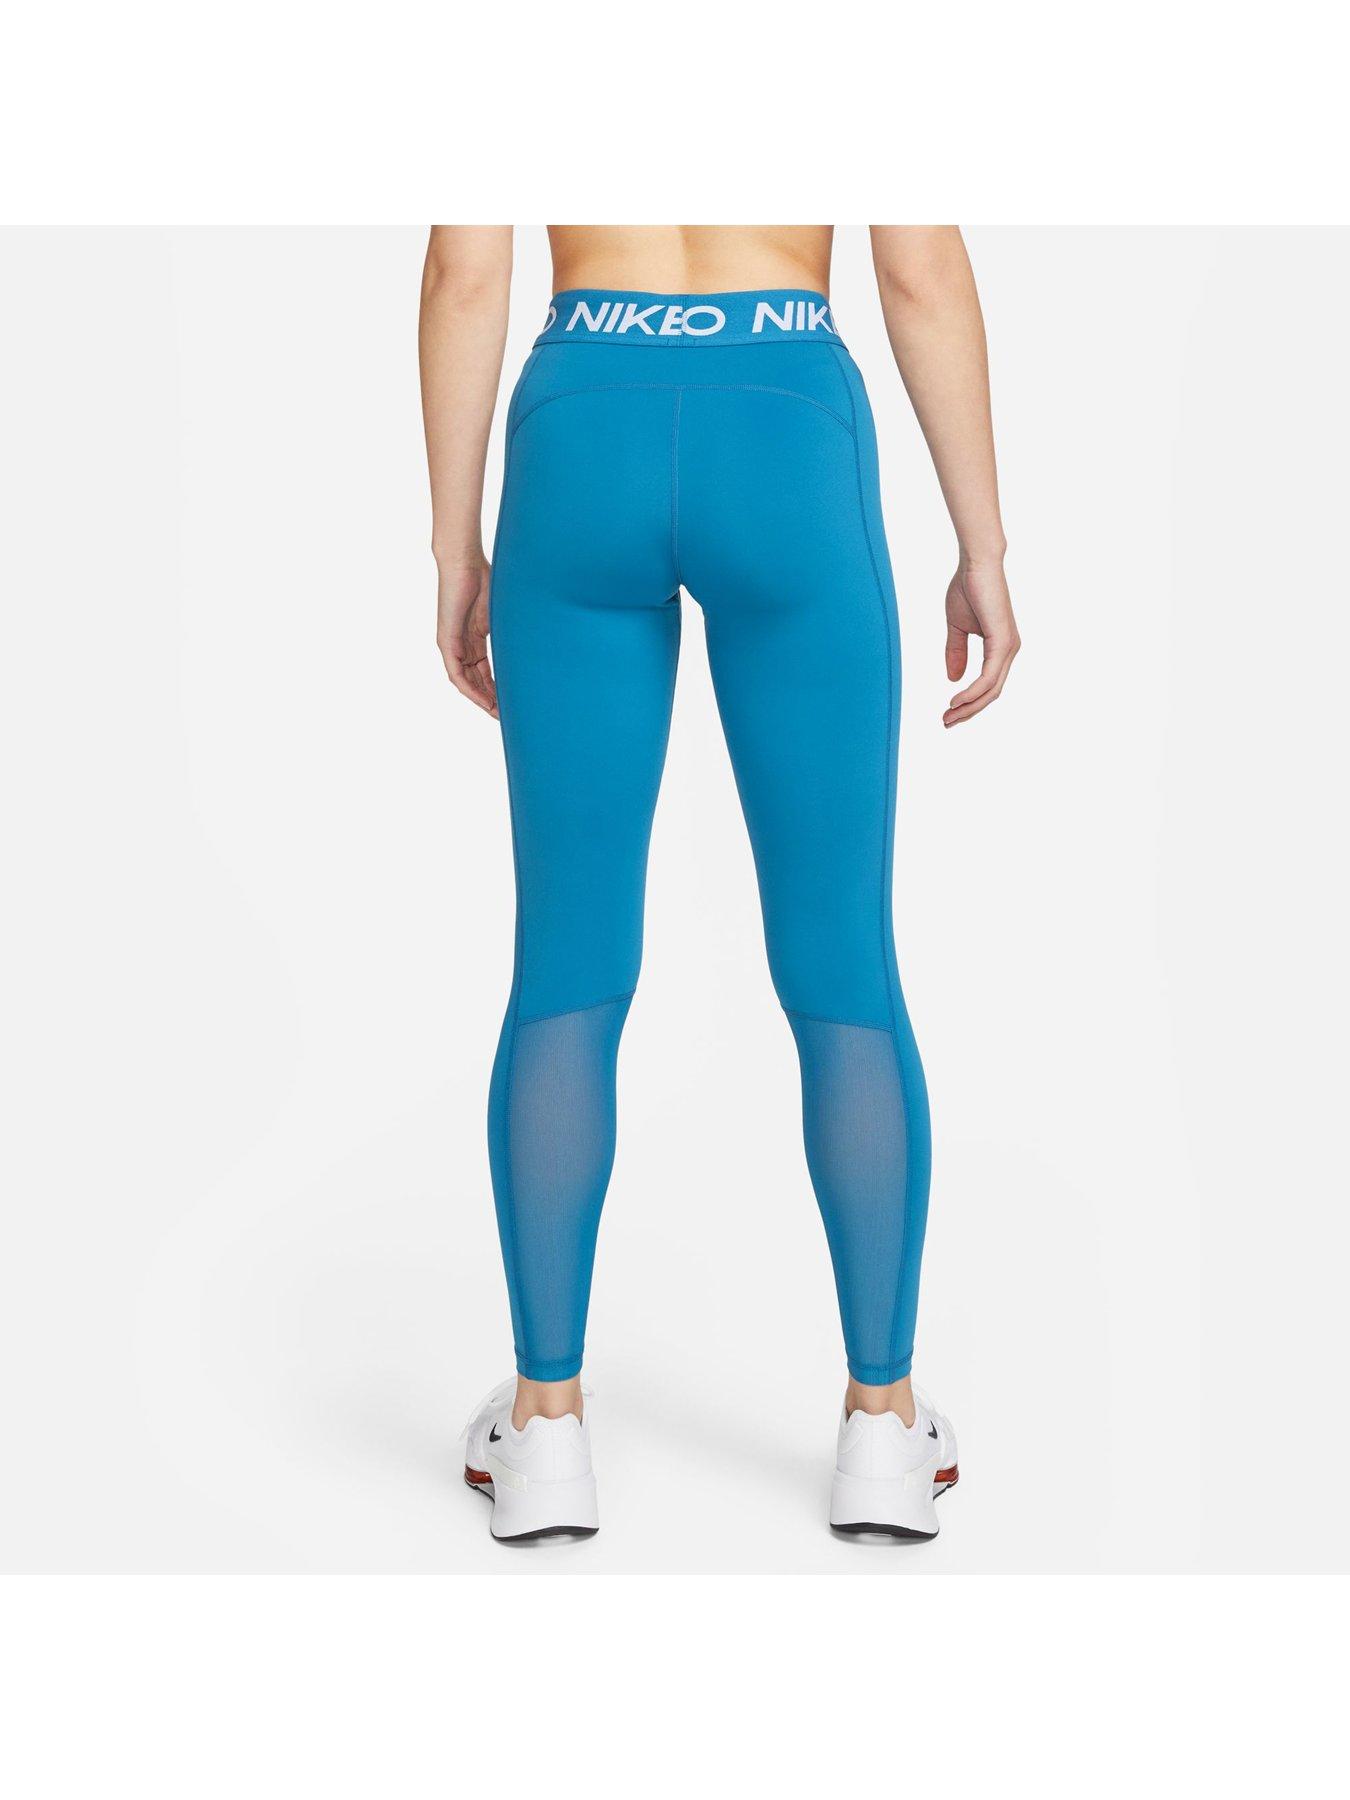 Nike Pro 365 Women's High-Waisted 7/8 Mesh Panel Leggings - Black/Multi